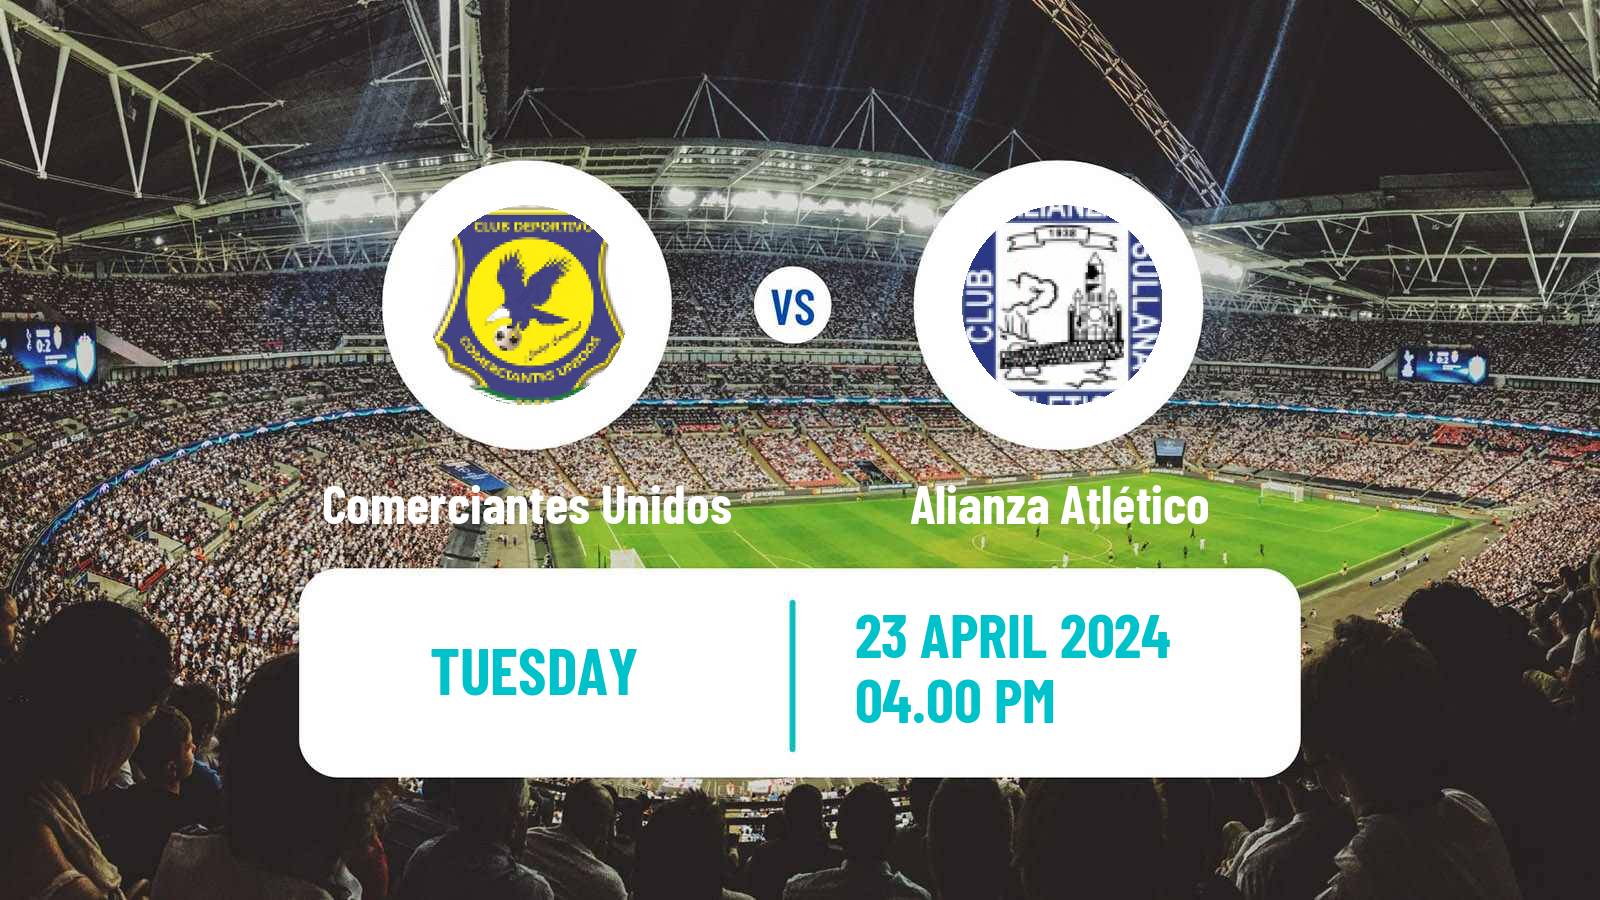 Soccer Peruvian Liga 1 Comerciantes Unidos - Alianza Atlético